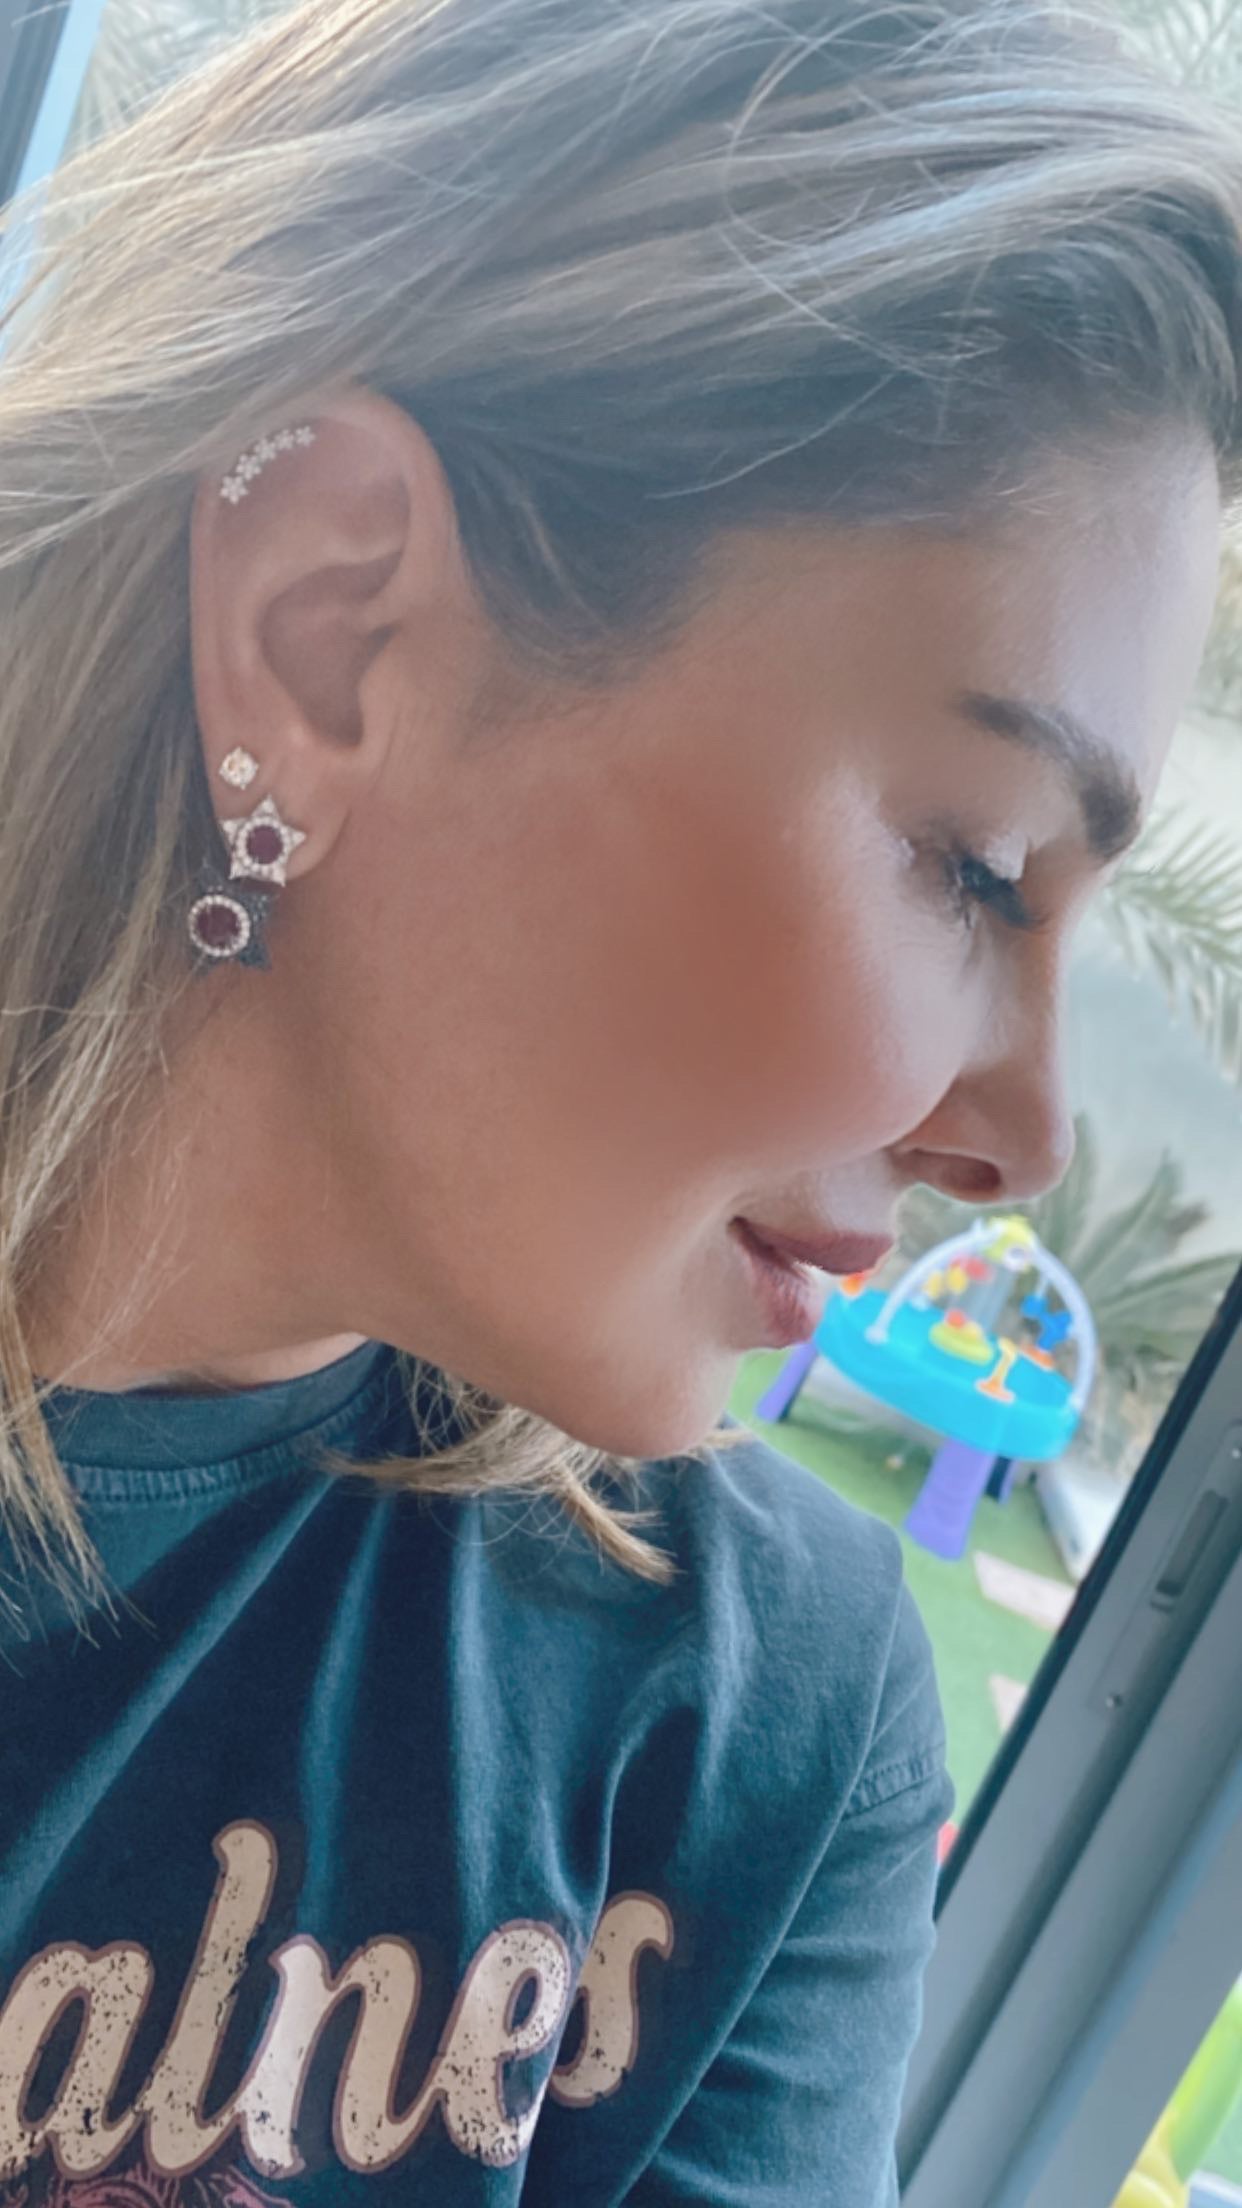 Midnight Ruby star earrings